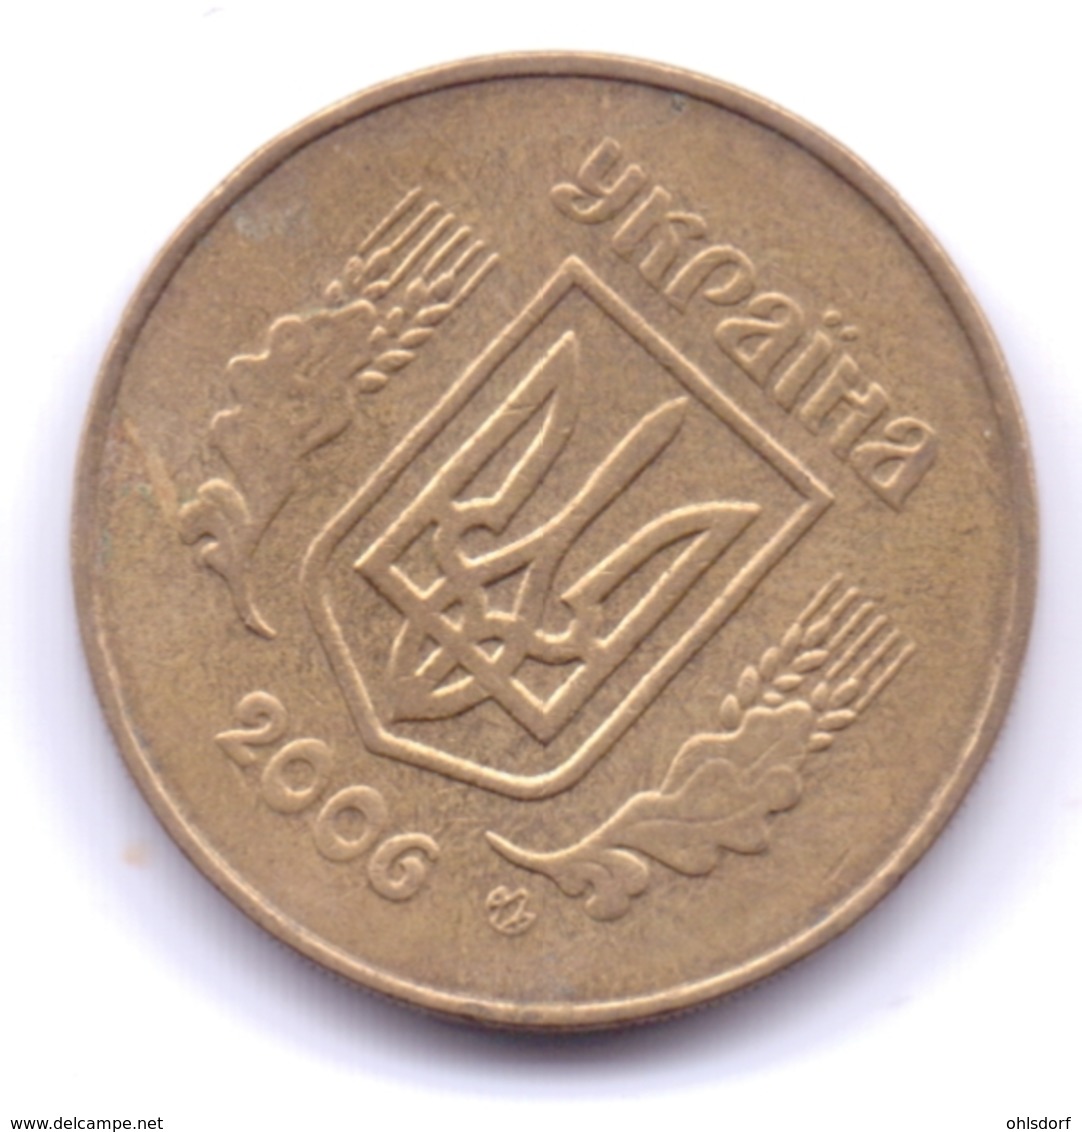 UKRAINE 2006: 50 Kopiyok, KM 3.3b - Ukraine